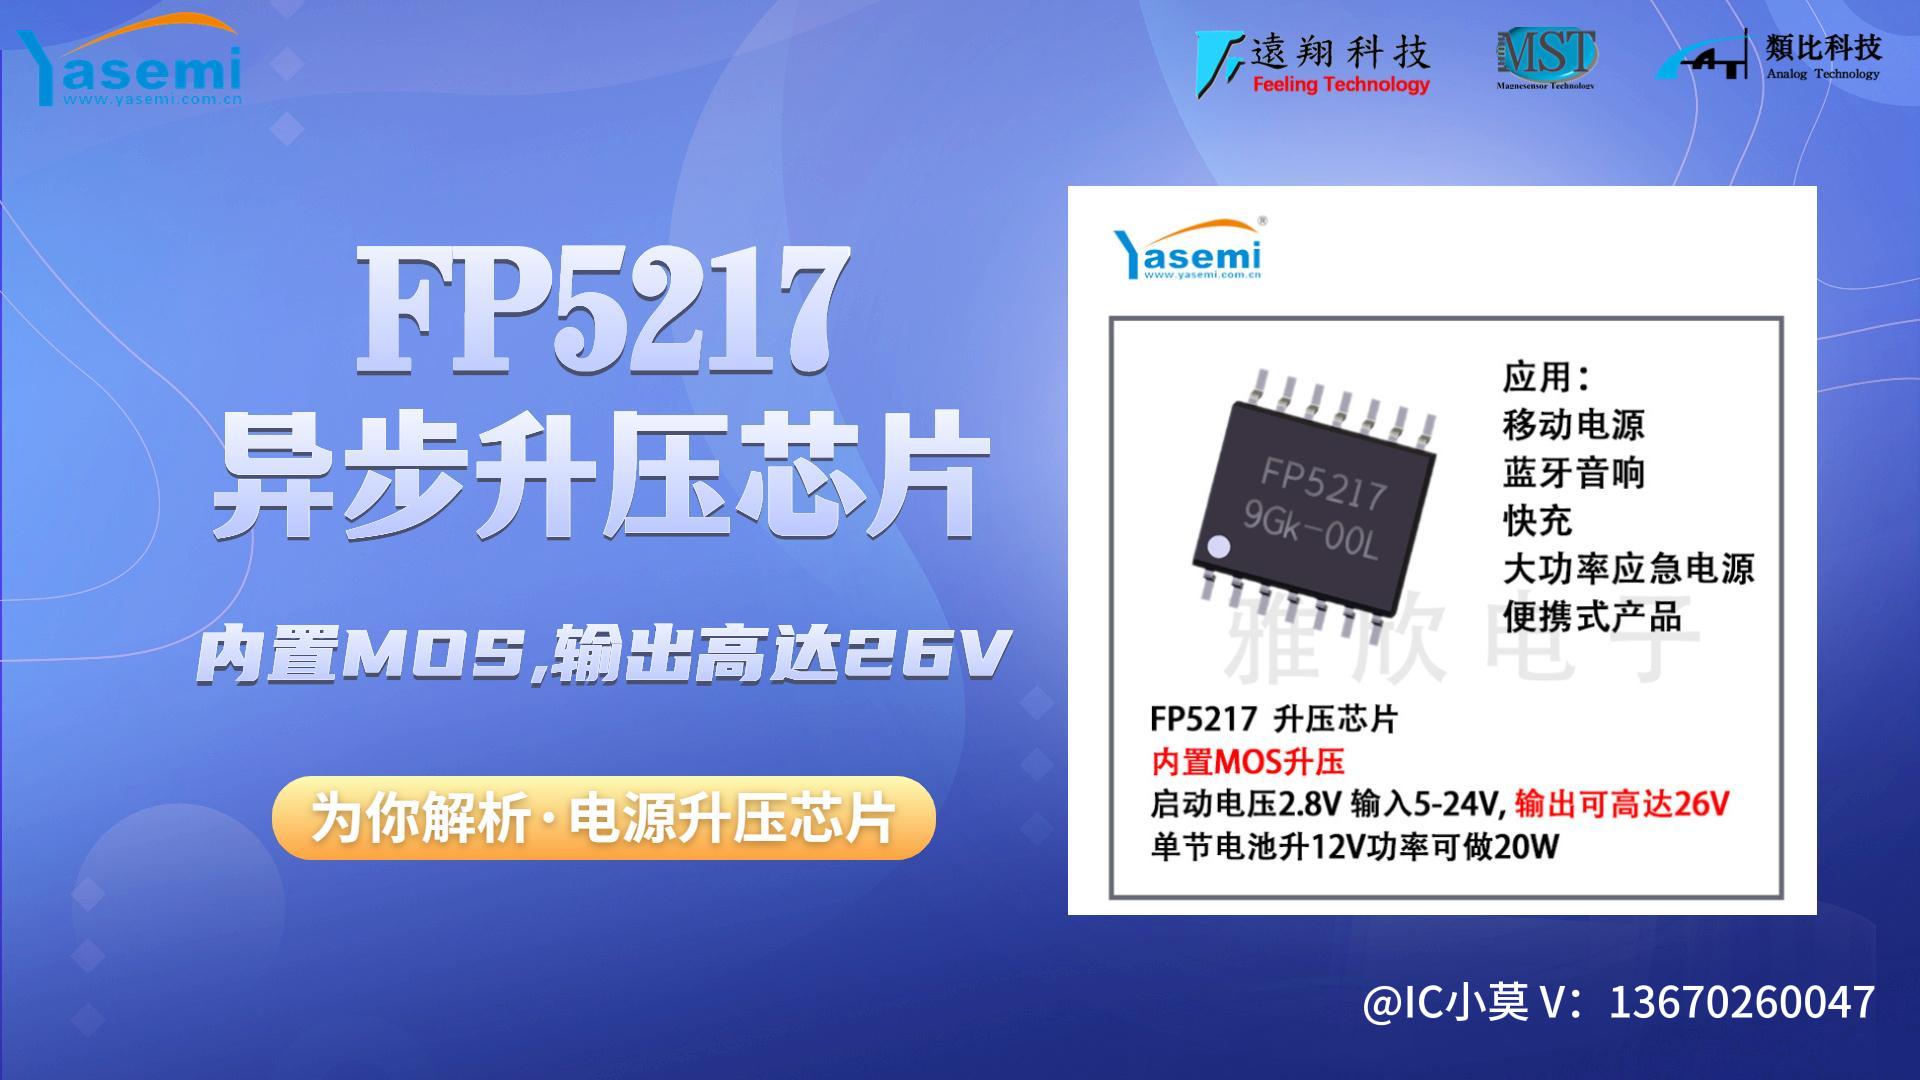 芯片講解|FP5217異步內置MOS升壓恒壓芯片，最高輸出6-24V/60W#DC-DC驅動IC#升壓芯片
 